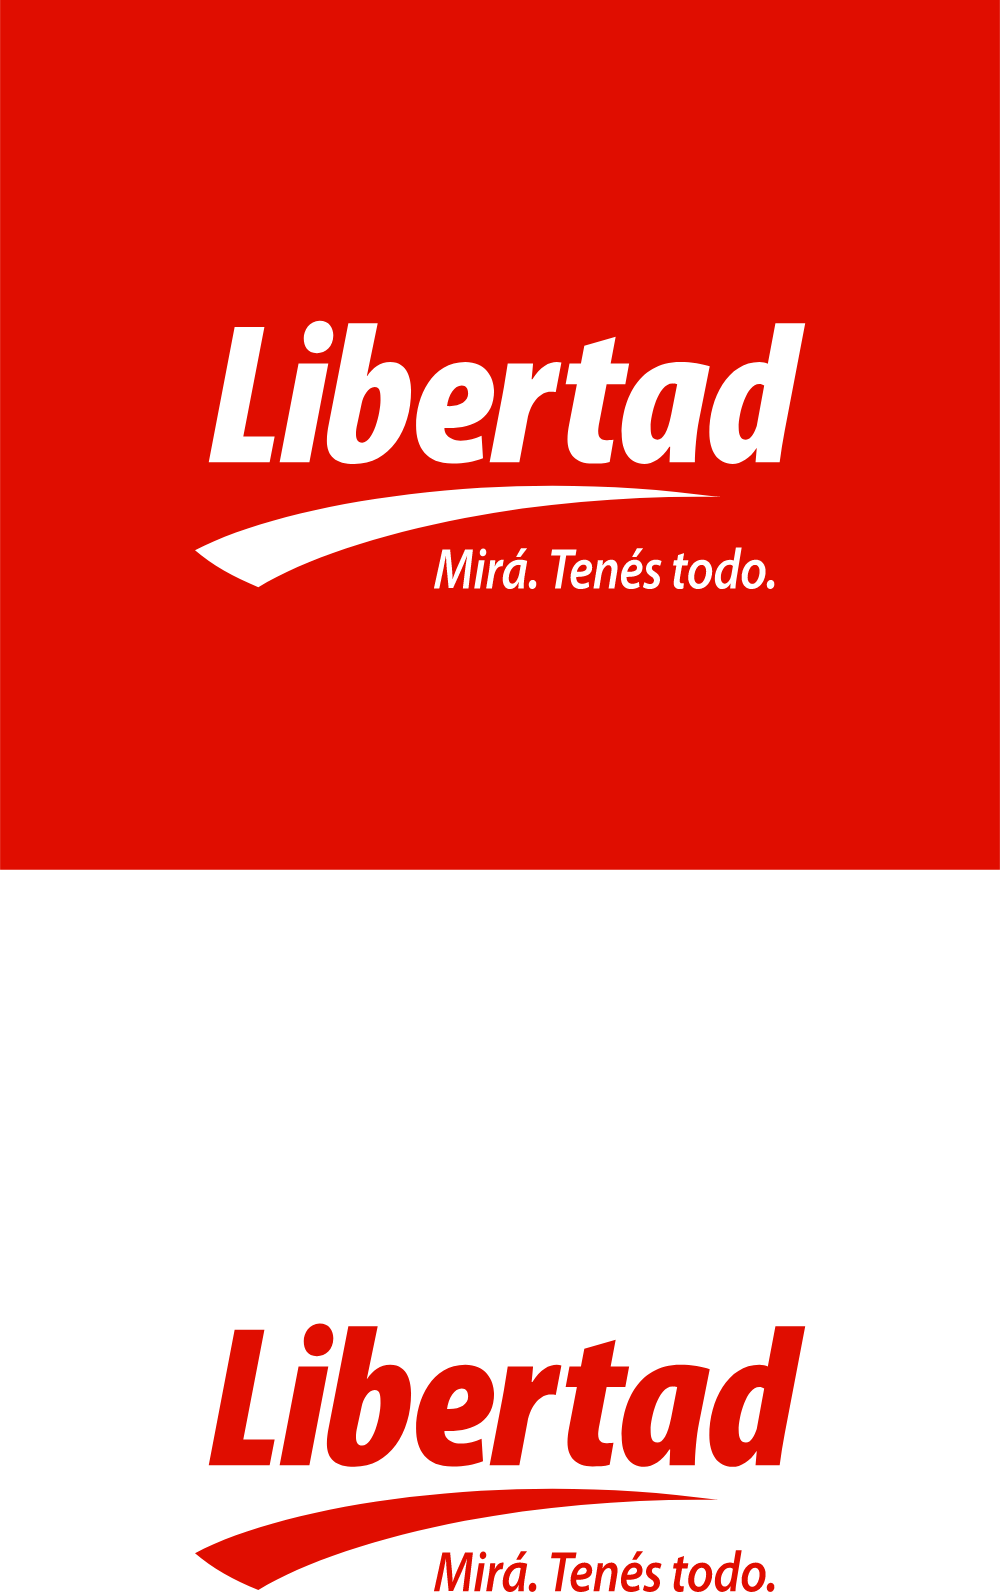 Libertad Hipermercado Logo Logos